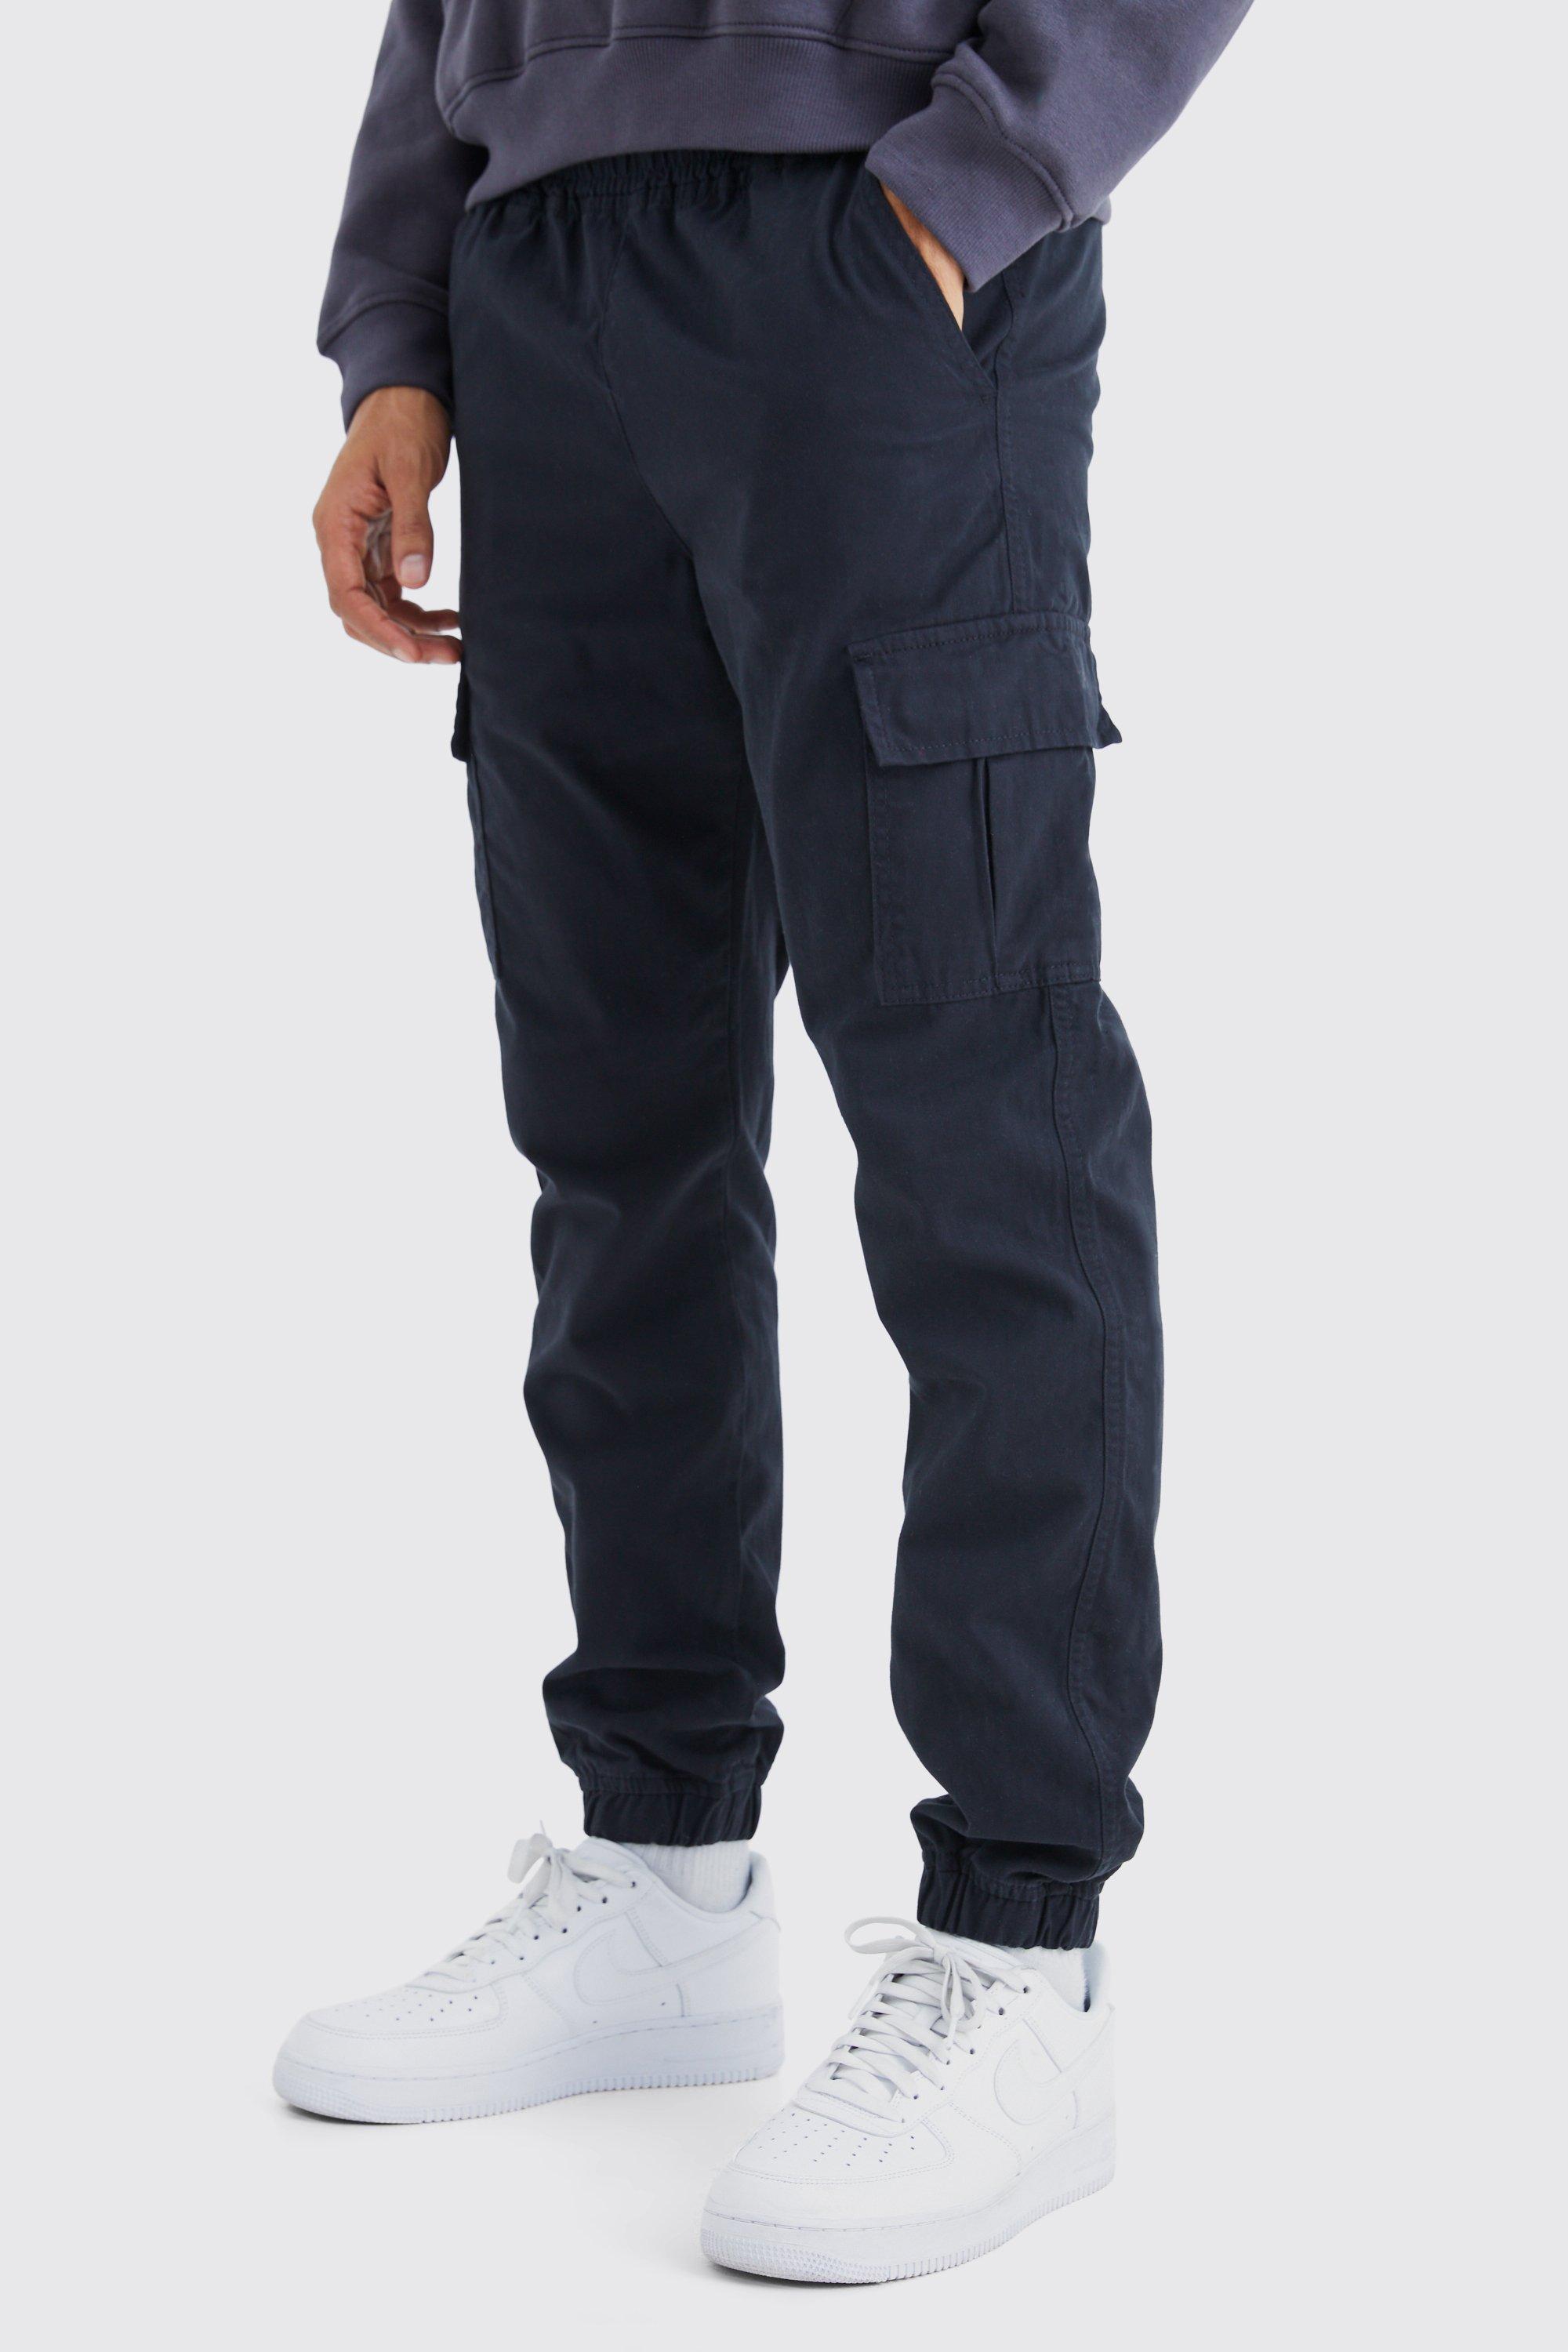 pantalon cargo cintré taille élastique homme - noir - xs, noir